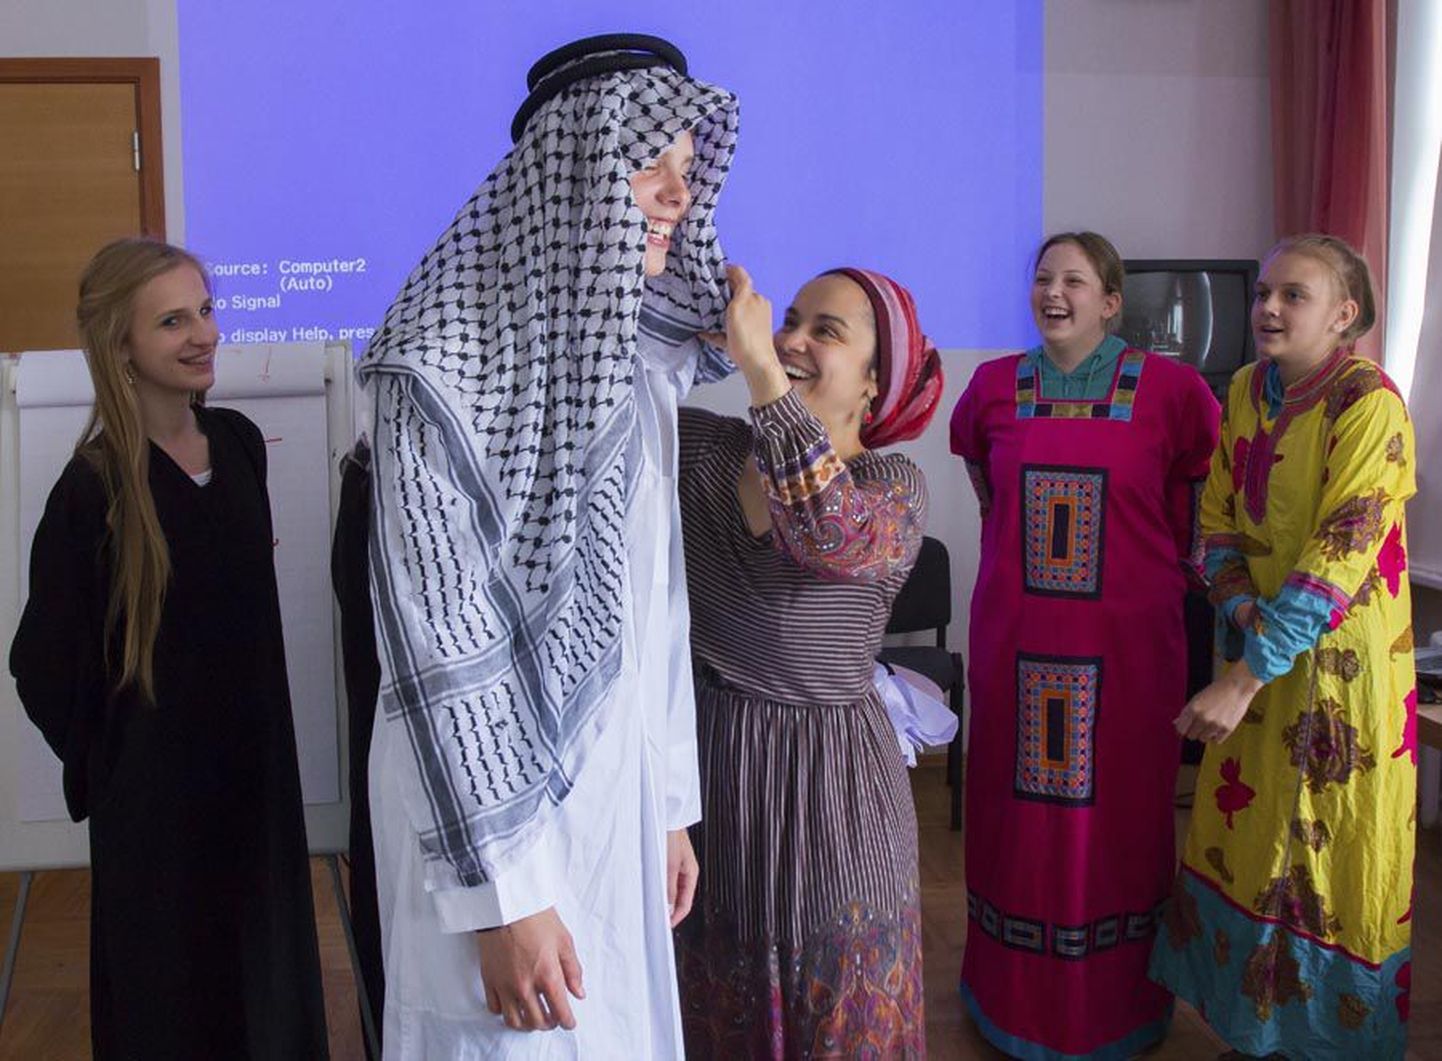 Eesti soost moslemi Kristi Ockba korraldatud töötoas said Paalalinna kooli õpilased muu hulgas selga proovida araabia maades kantavaid riideid.